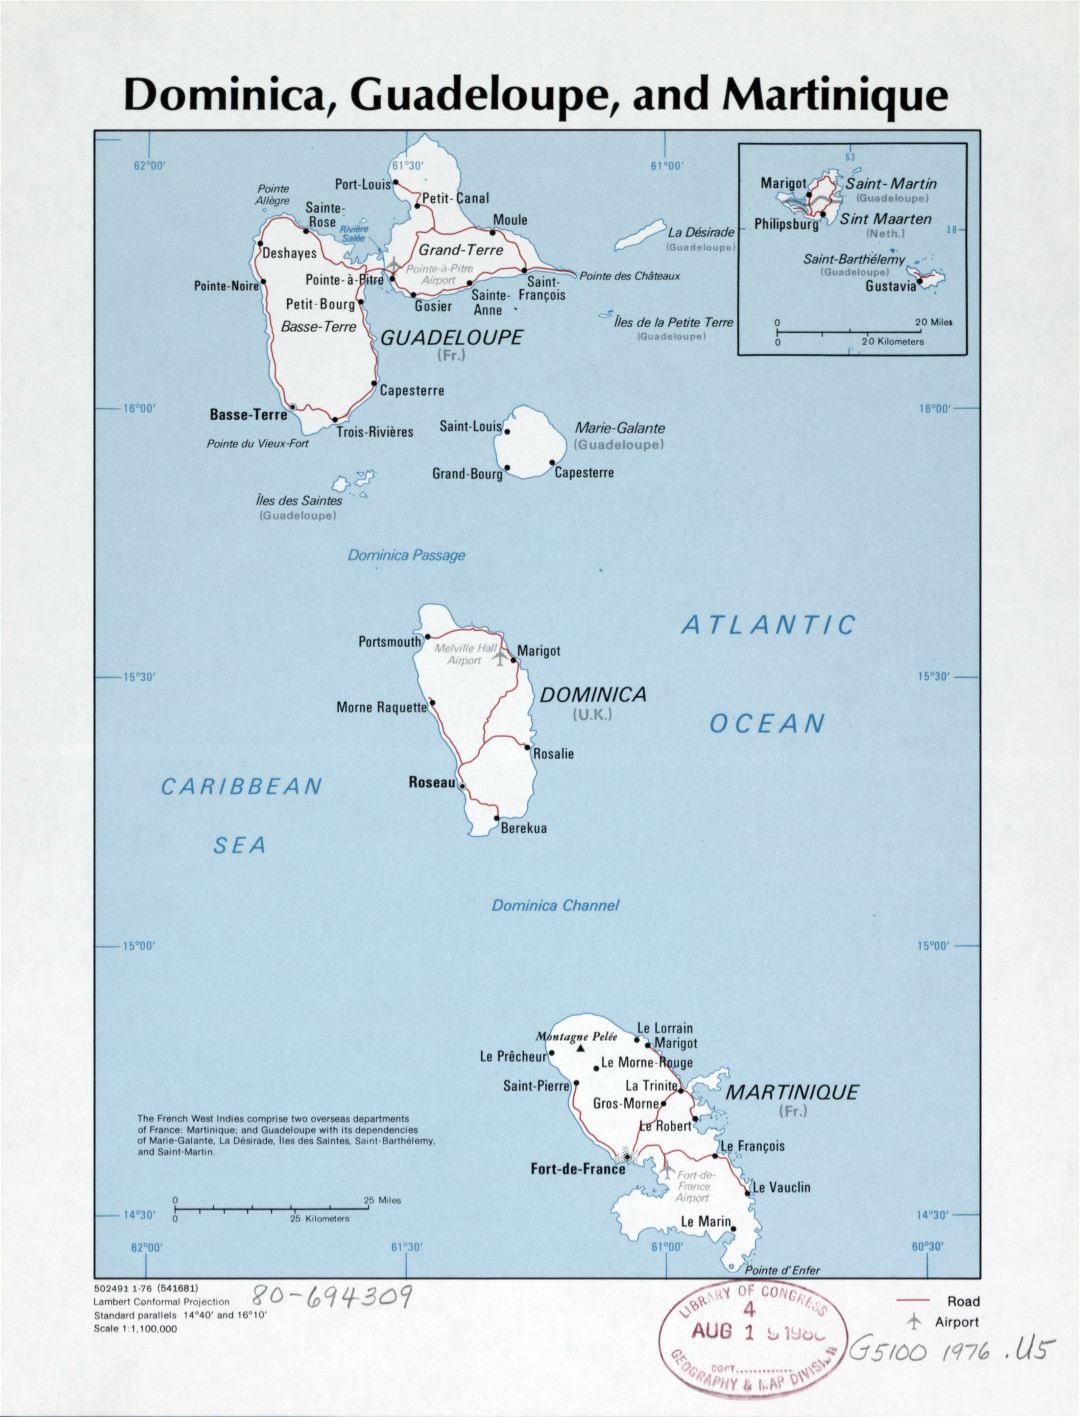 Большая детальная политическая карта Доминики, Гваделупы и Мартиники с дорогами, городами и аэропортами - 1976